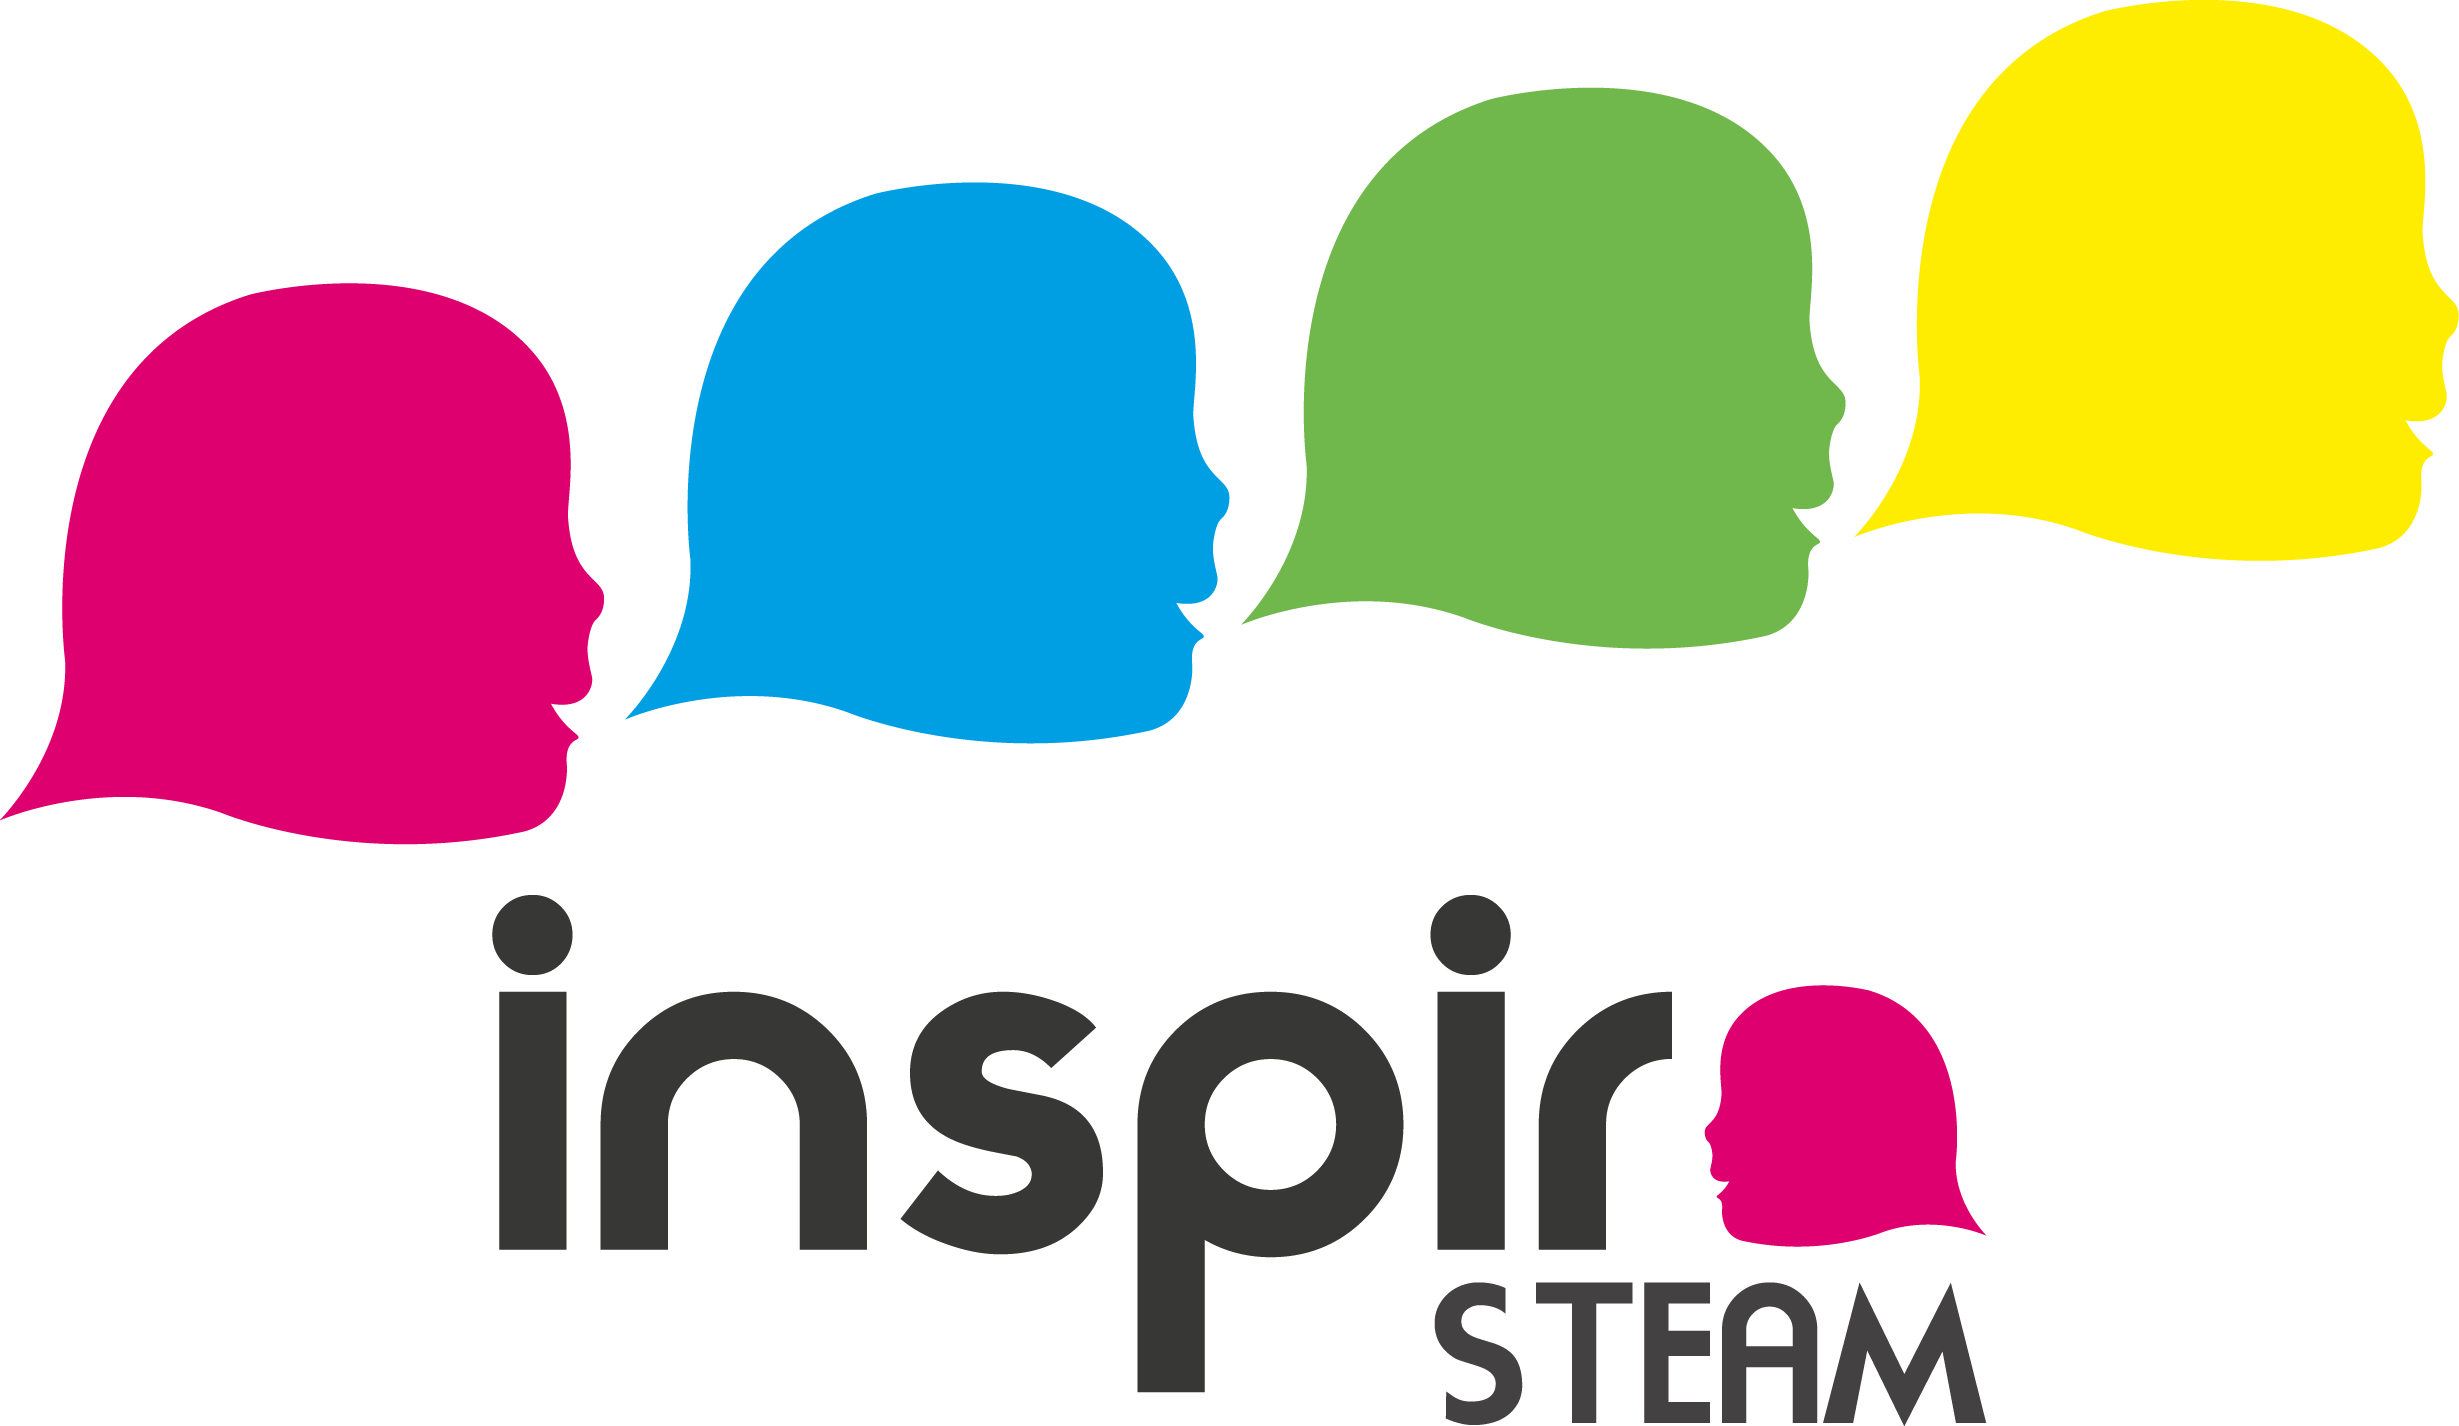 Inspira STEAM es un proyecto pionero para el fomento de la vocación científico-tecnológica entre las niñas, basado en acciones de sensibilización y orientación, que imparten mujeres profesionales del mundo de la investigación, la ciencia y la tecnología.